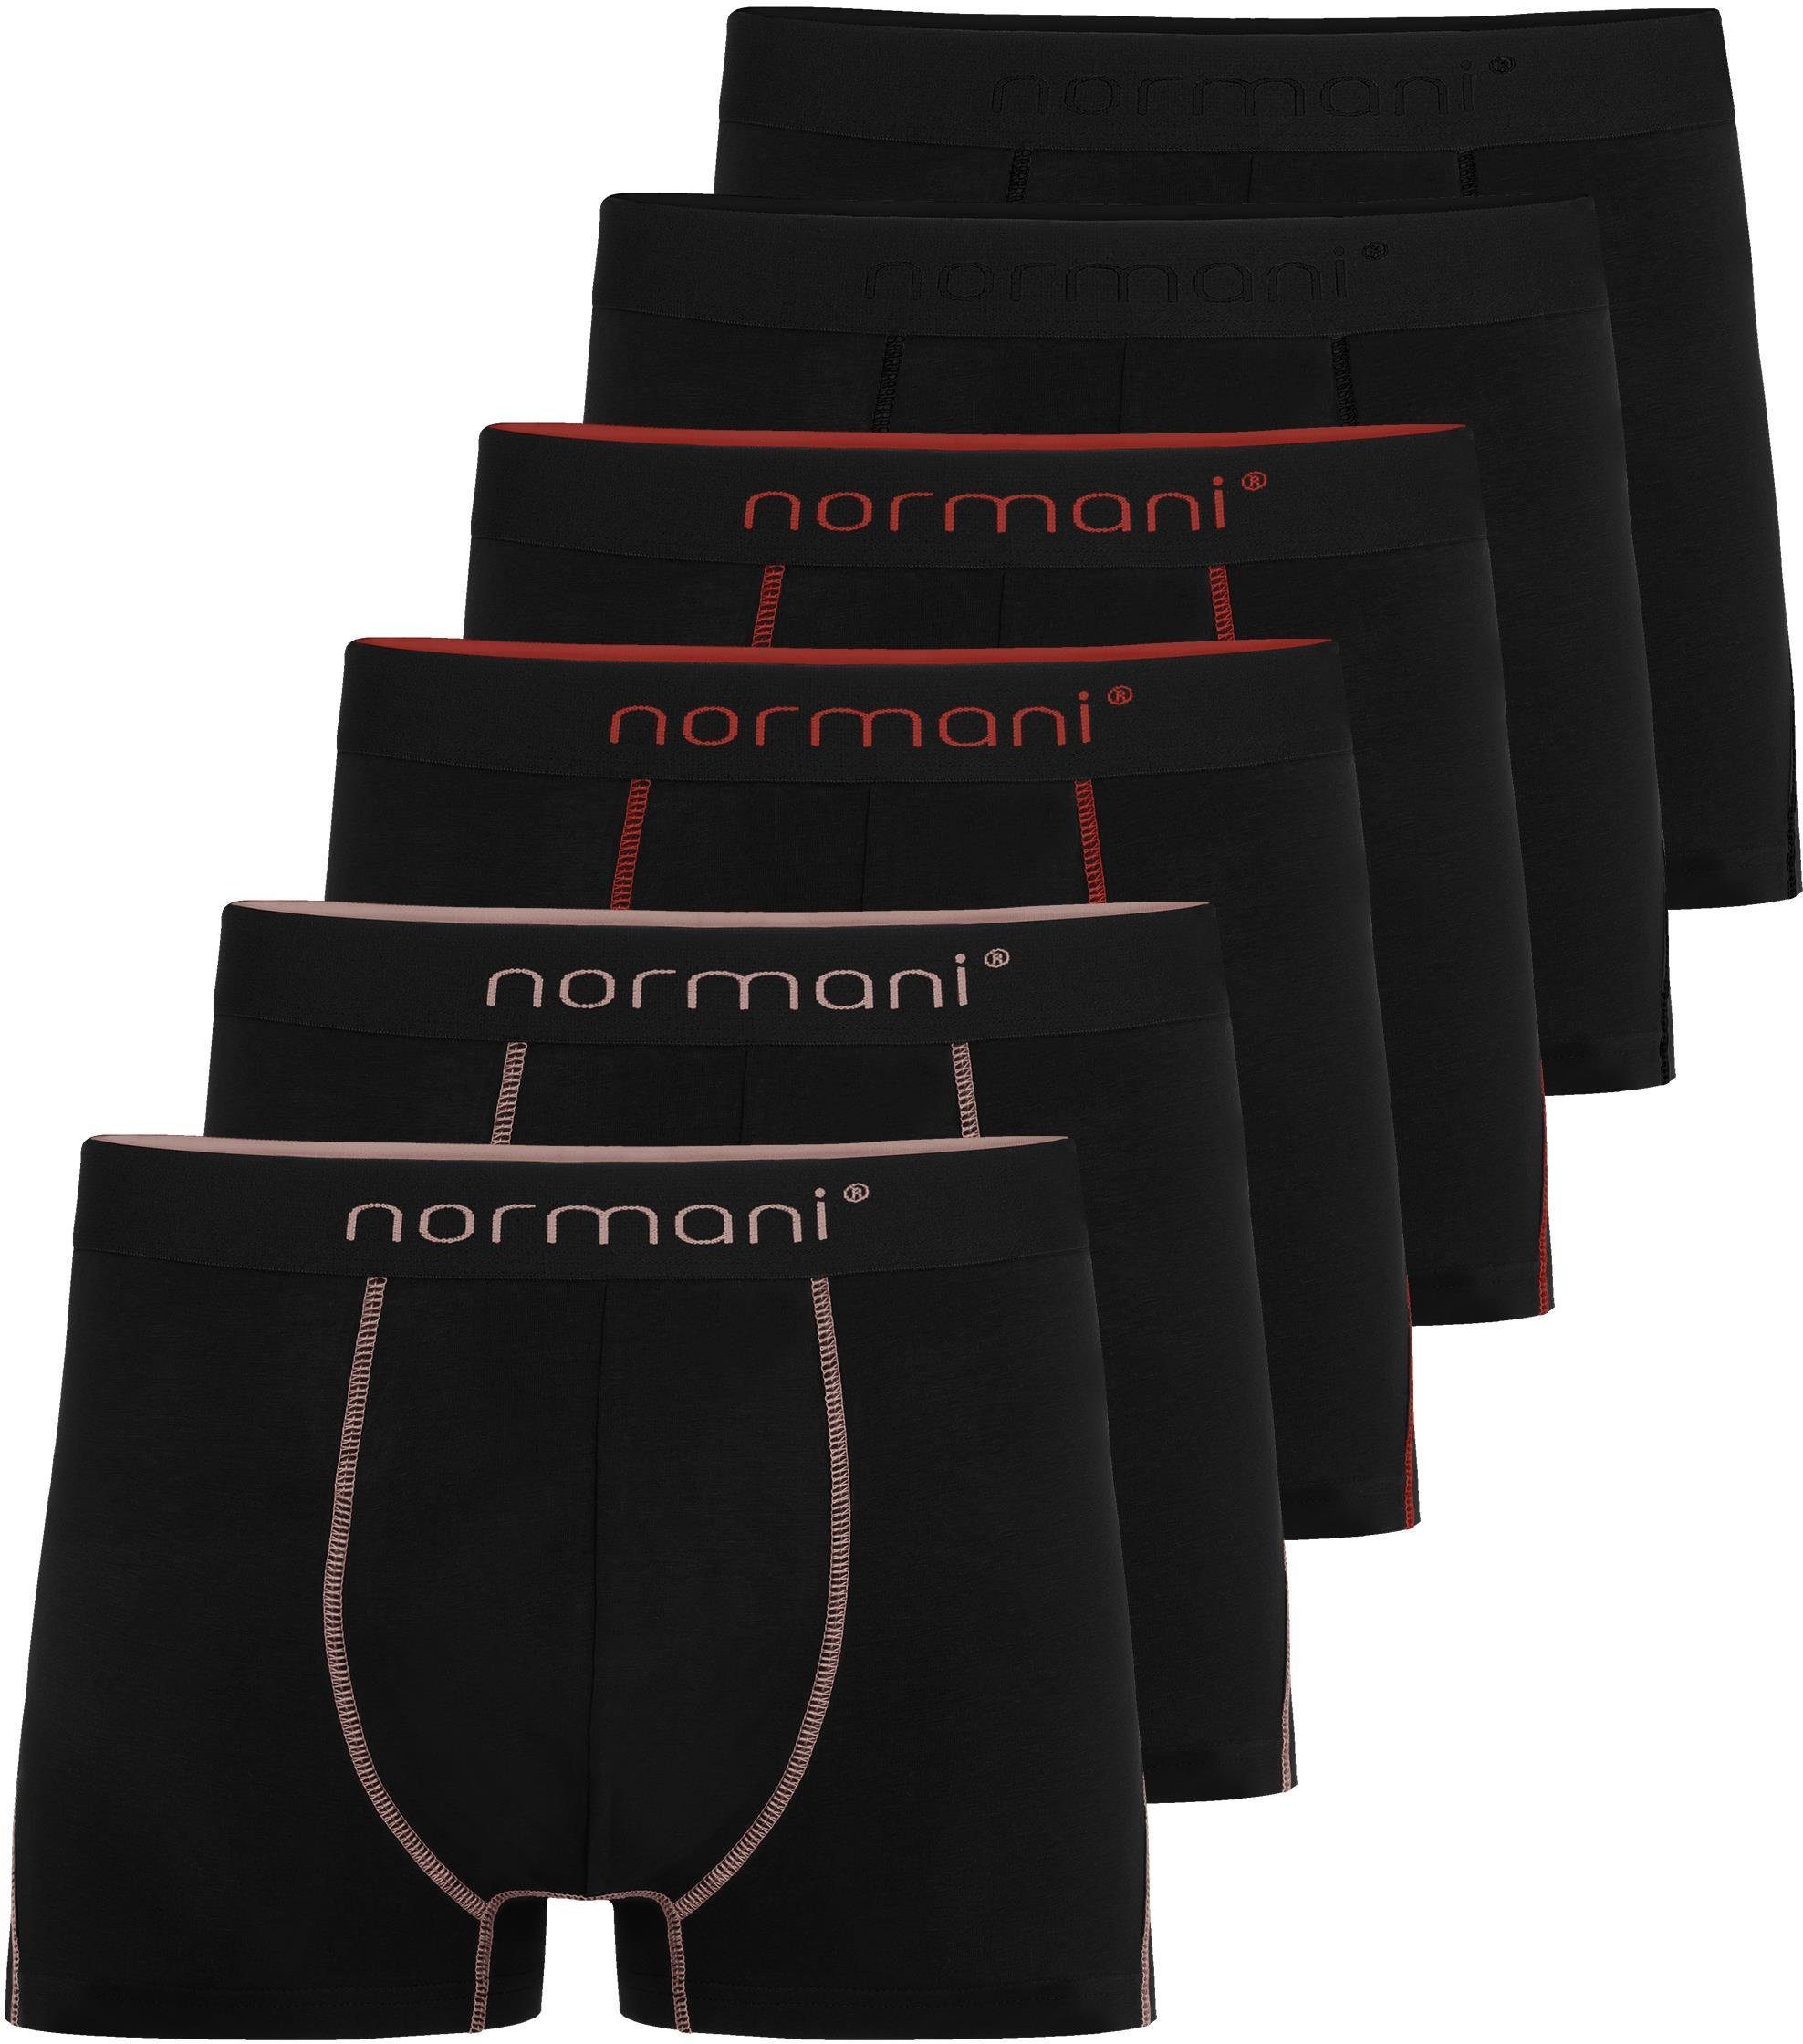 normani Boxershorts 6x Herren Baumwoll-Boxershorts Unterhose aus atmungsaktiver Baumwolle für Männer Schwarz/Rot/Lachs